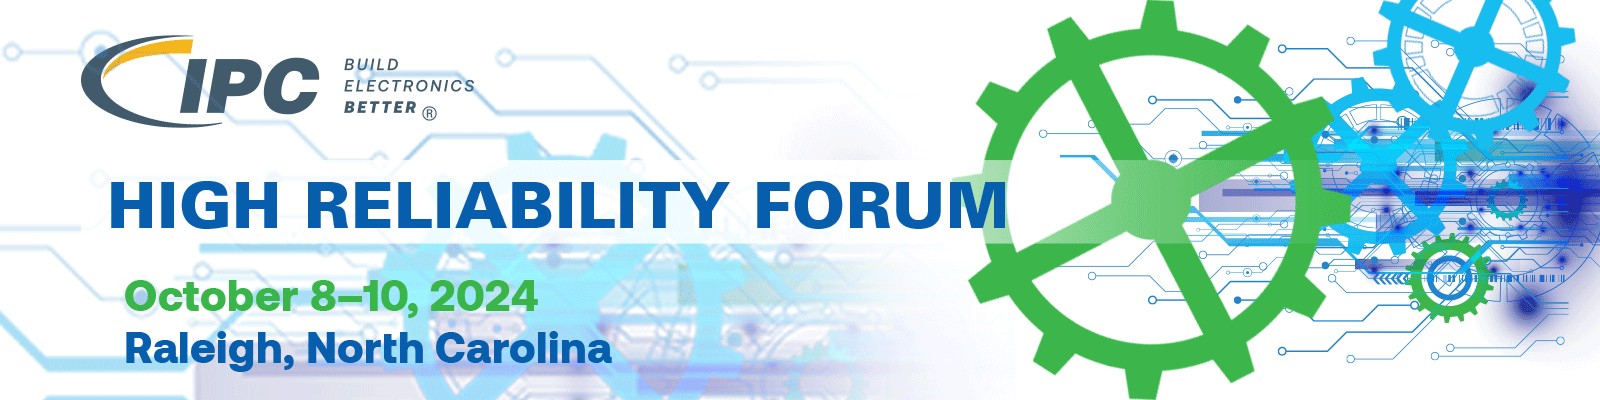 High Reliability Forum 2024